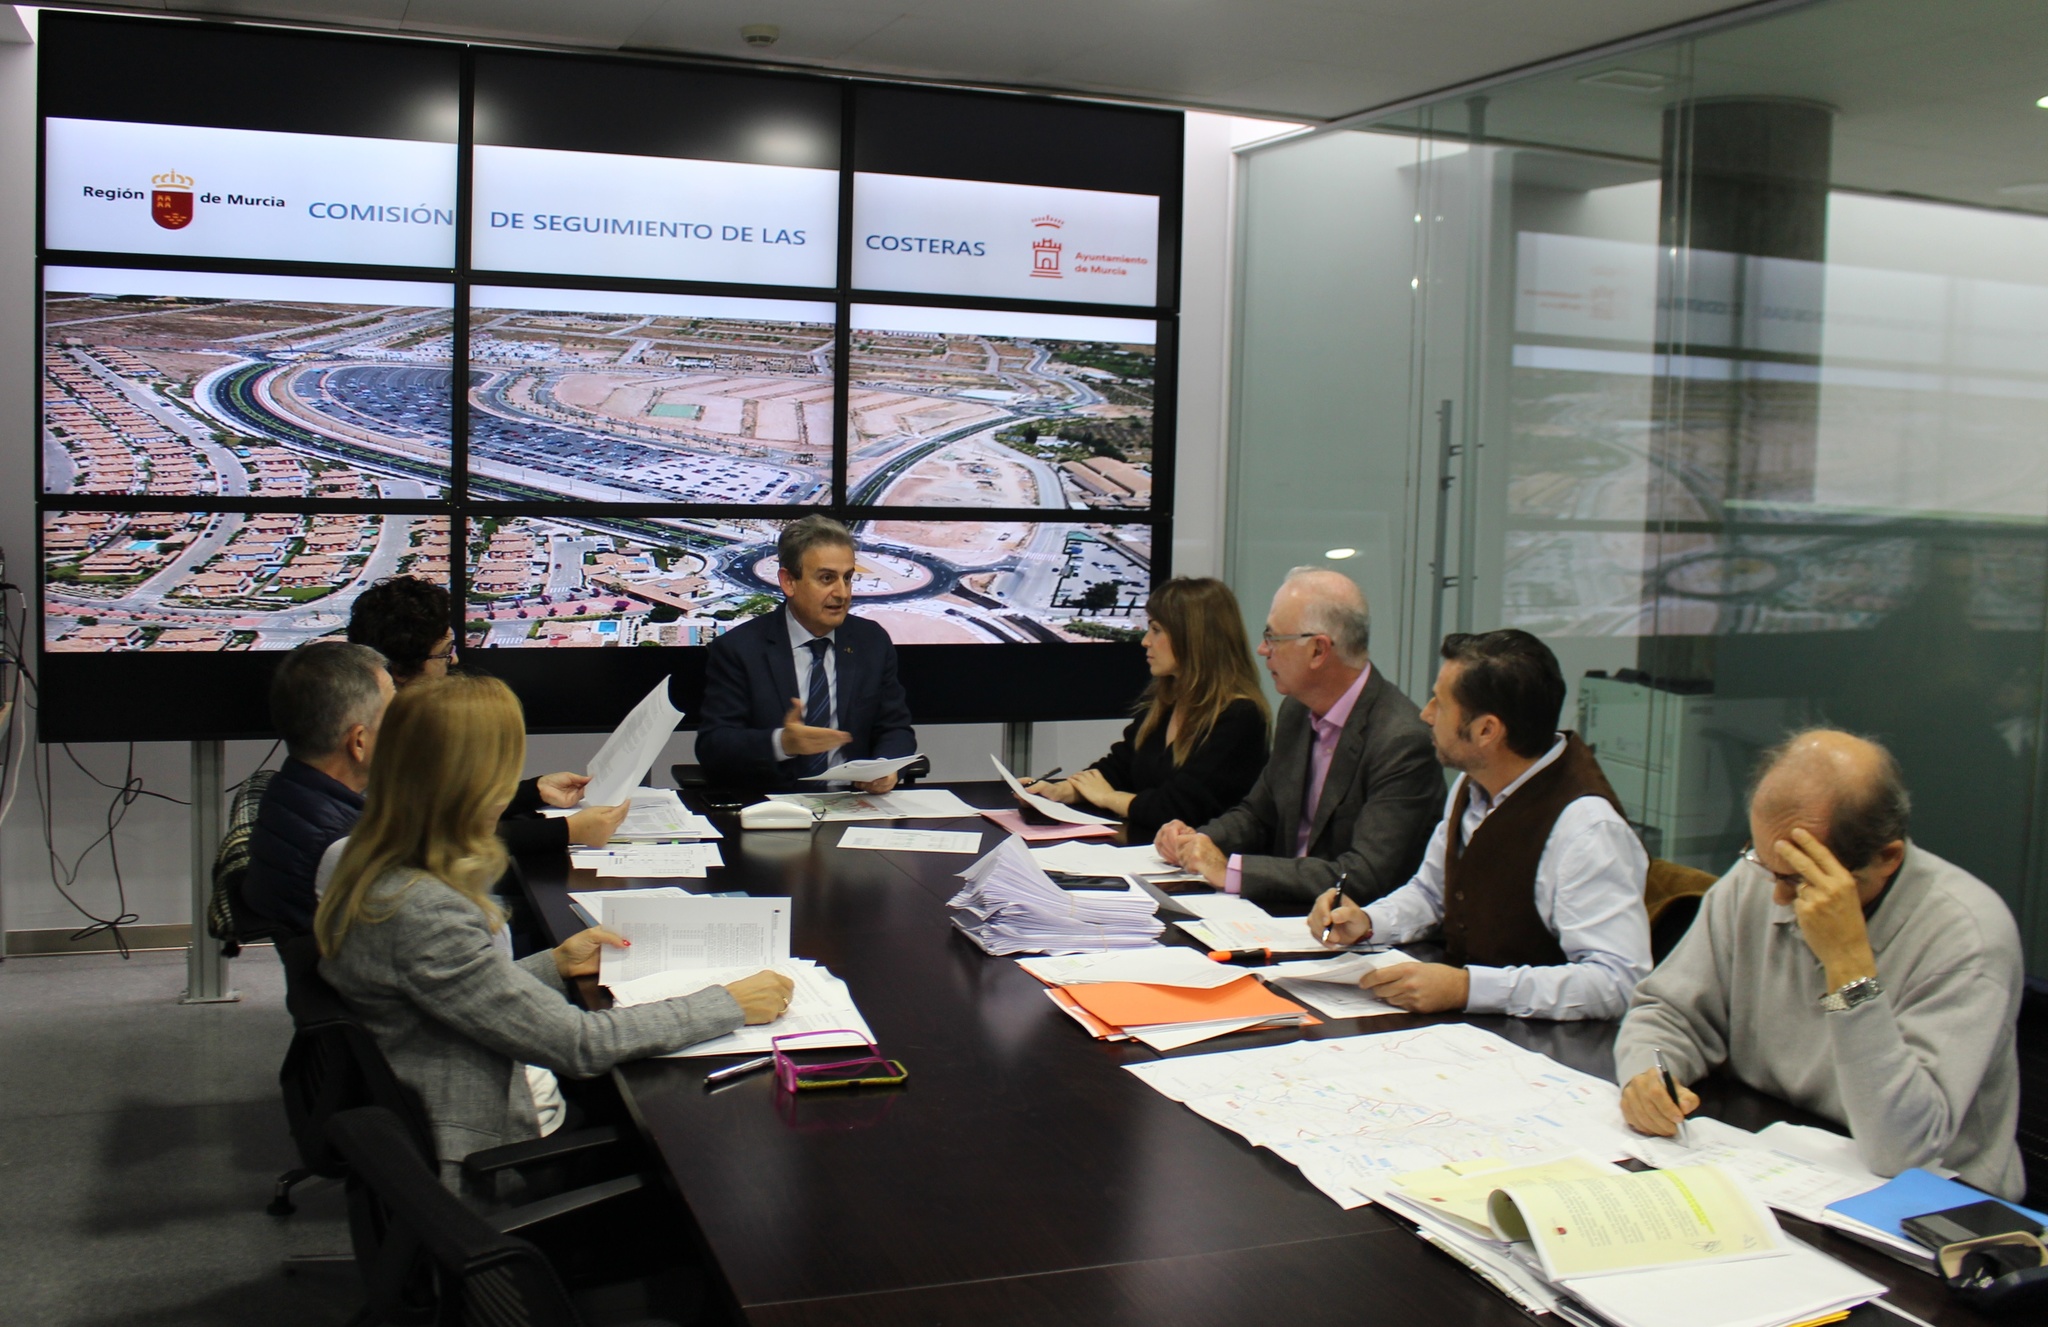 Imagen de la reunión de la comisión de seguimiento del convenio para la mejora de las comunicaciones del término municipal de Murcia.